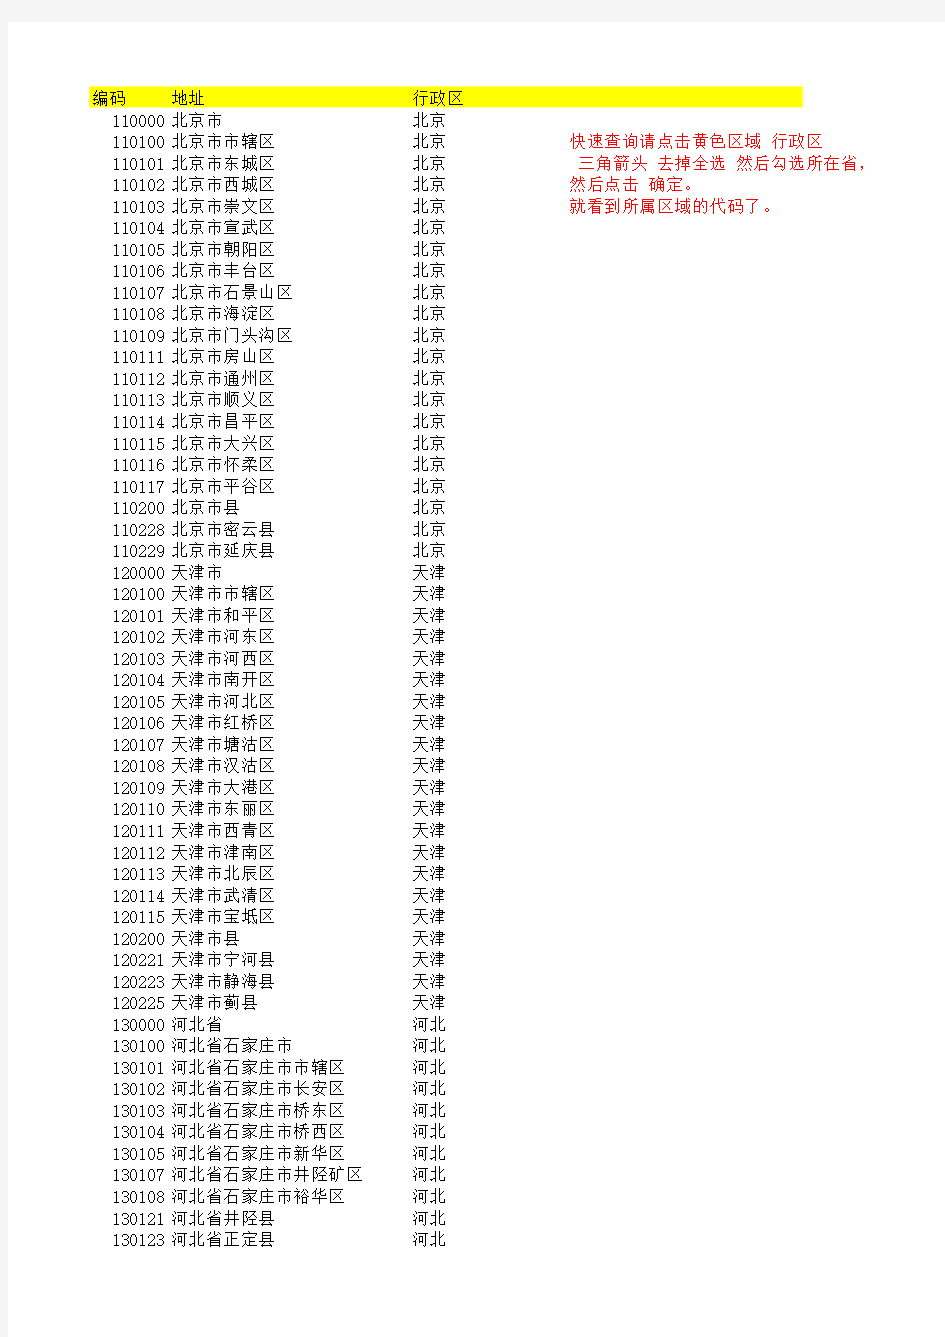 最新中国各省行政区划代码表